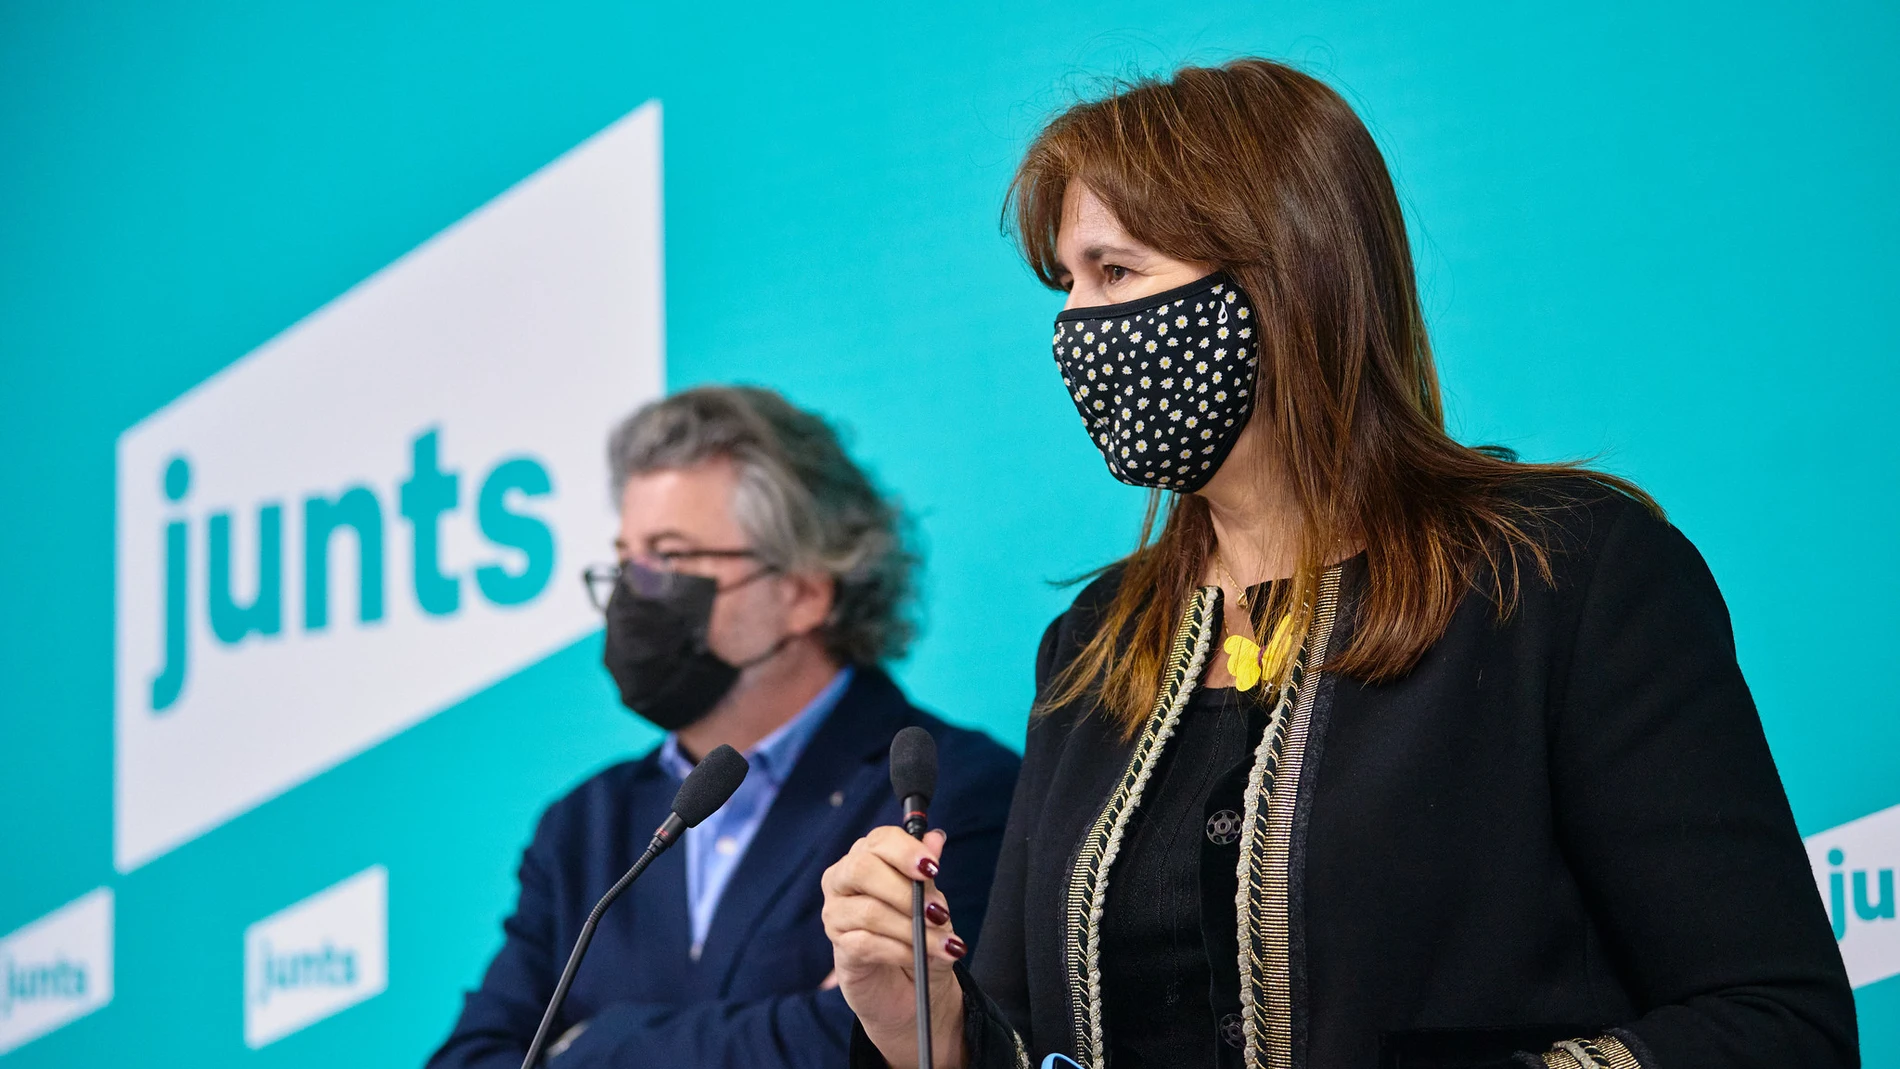 Laura Borràs (JxCat) y Toni Castellà (Demòcrates) en rueda de prensa